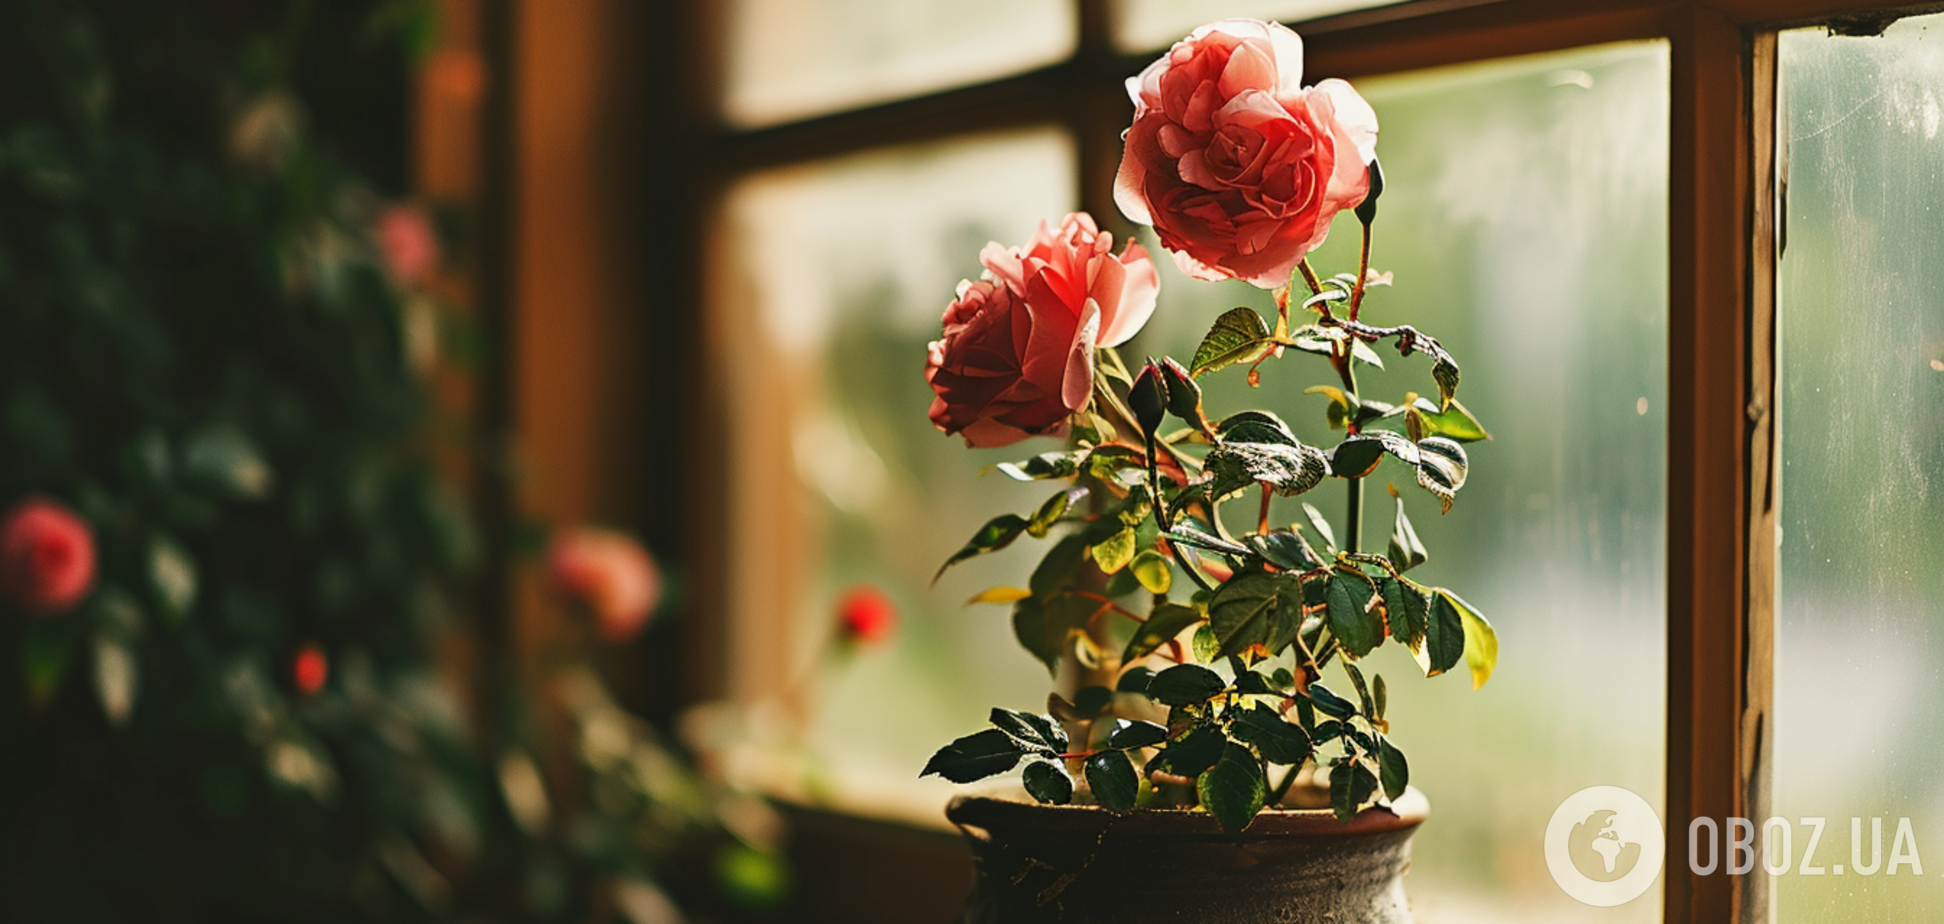 Как вырастить розу на подоконнике: простые лайфхаки для капризного цветка